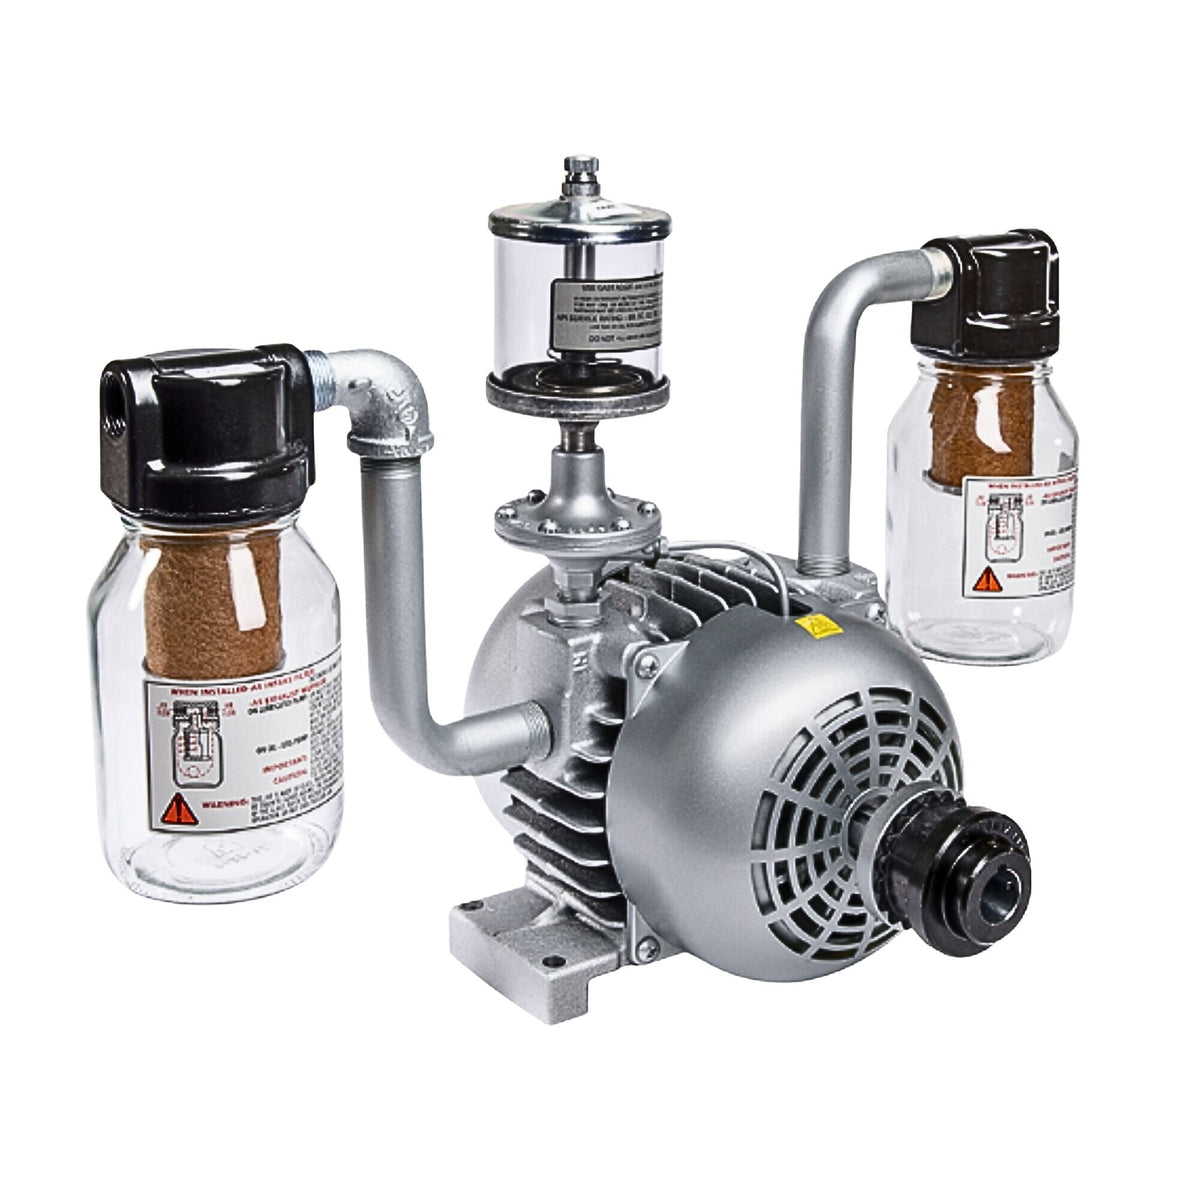 Gast | 1.5HP-4 Vane-Vacuum pump | 2565-V2A used on gast product line